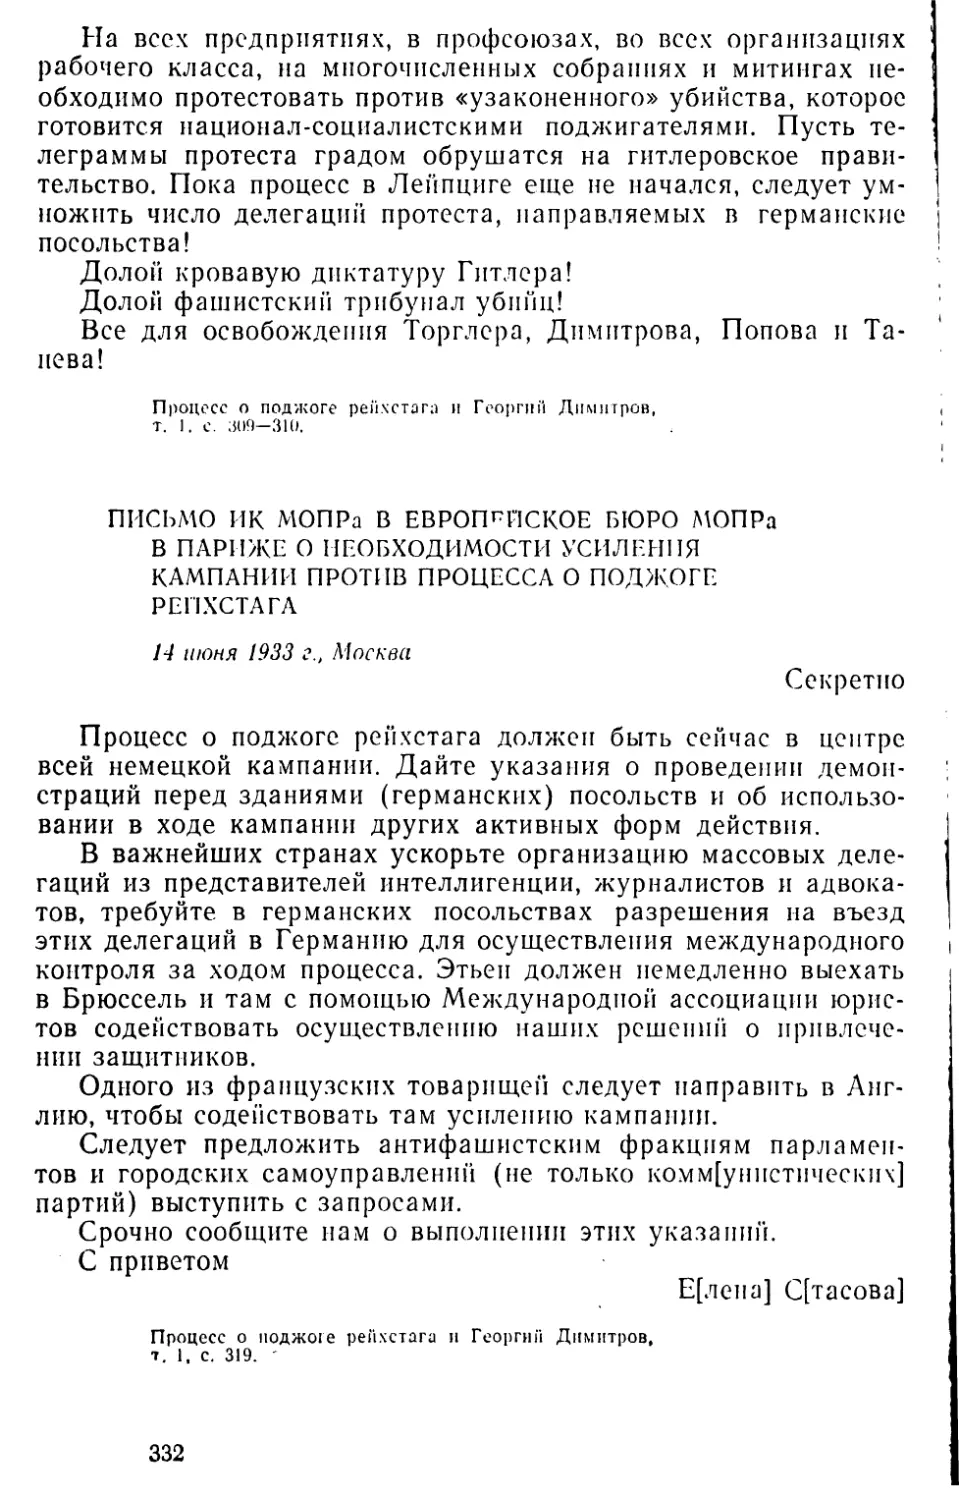 Письмо ИК МОПРа в Европейское бюро МОПРа в Париже о необходимости усиления кампании против процесса о поджоге рейхстага. 14 июня 1933 г